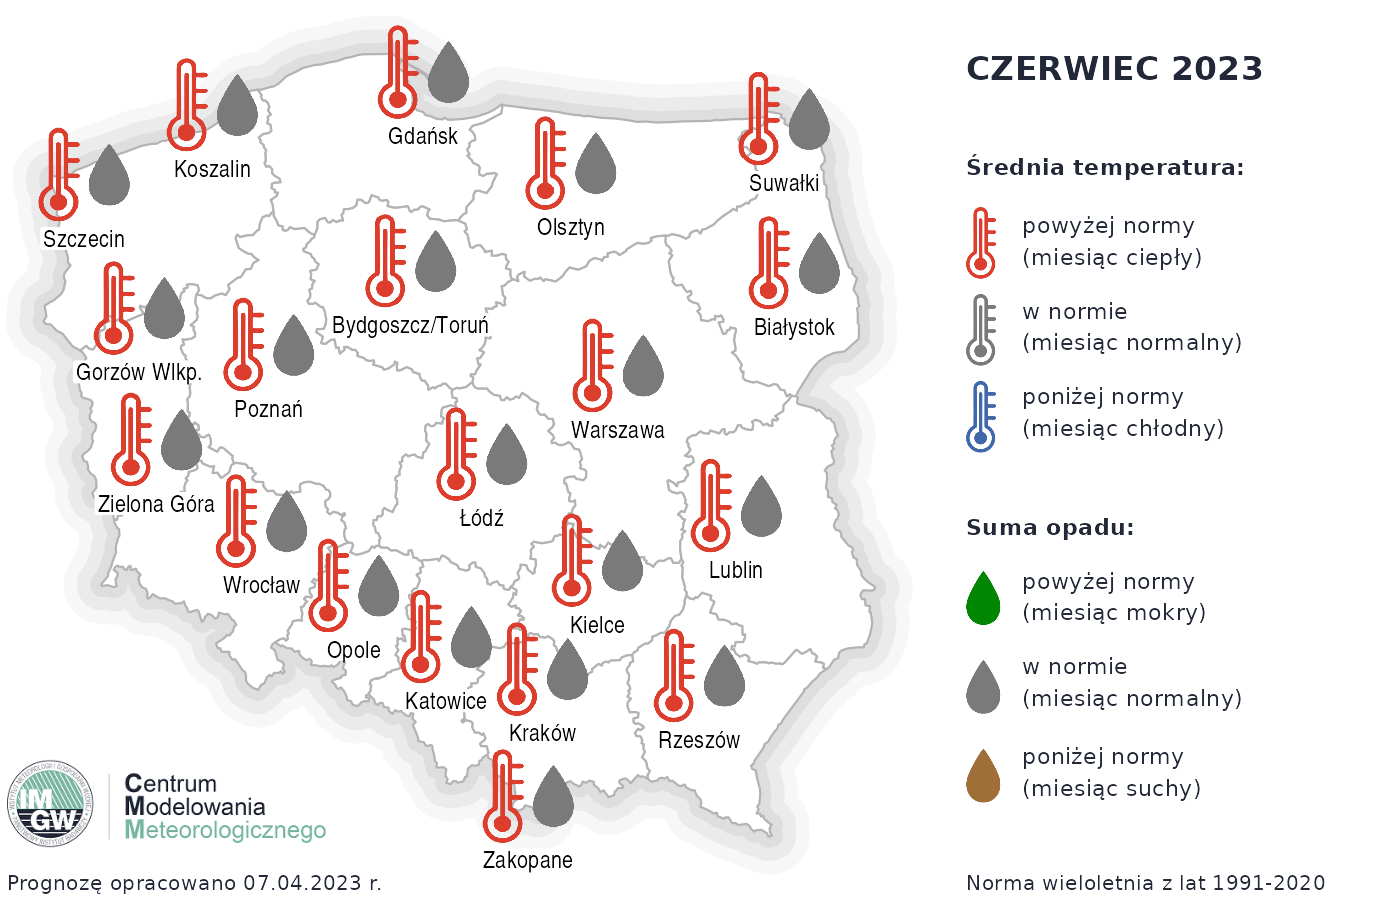 Rys.2. Prognoza średniej miesięcznej temperatury powietrza i miesięcznej sumy opadów atmosferycznych na czerwiec 2023 r. dla wybranych miast w Polsce